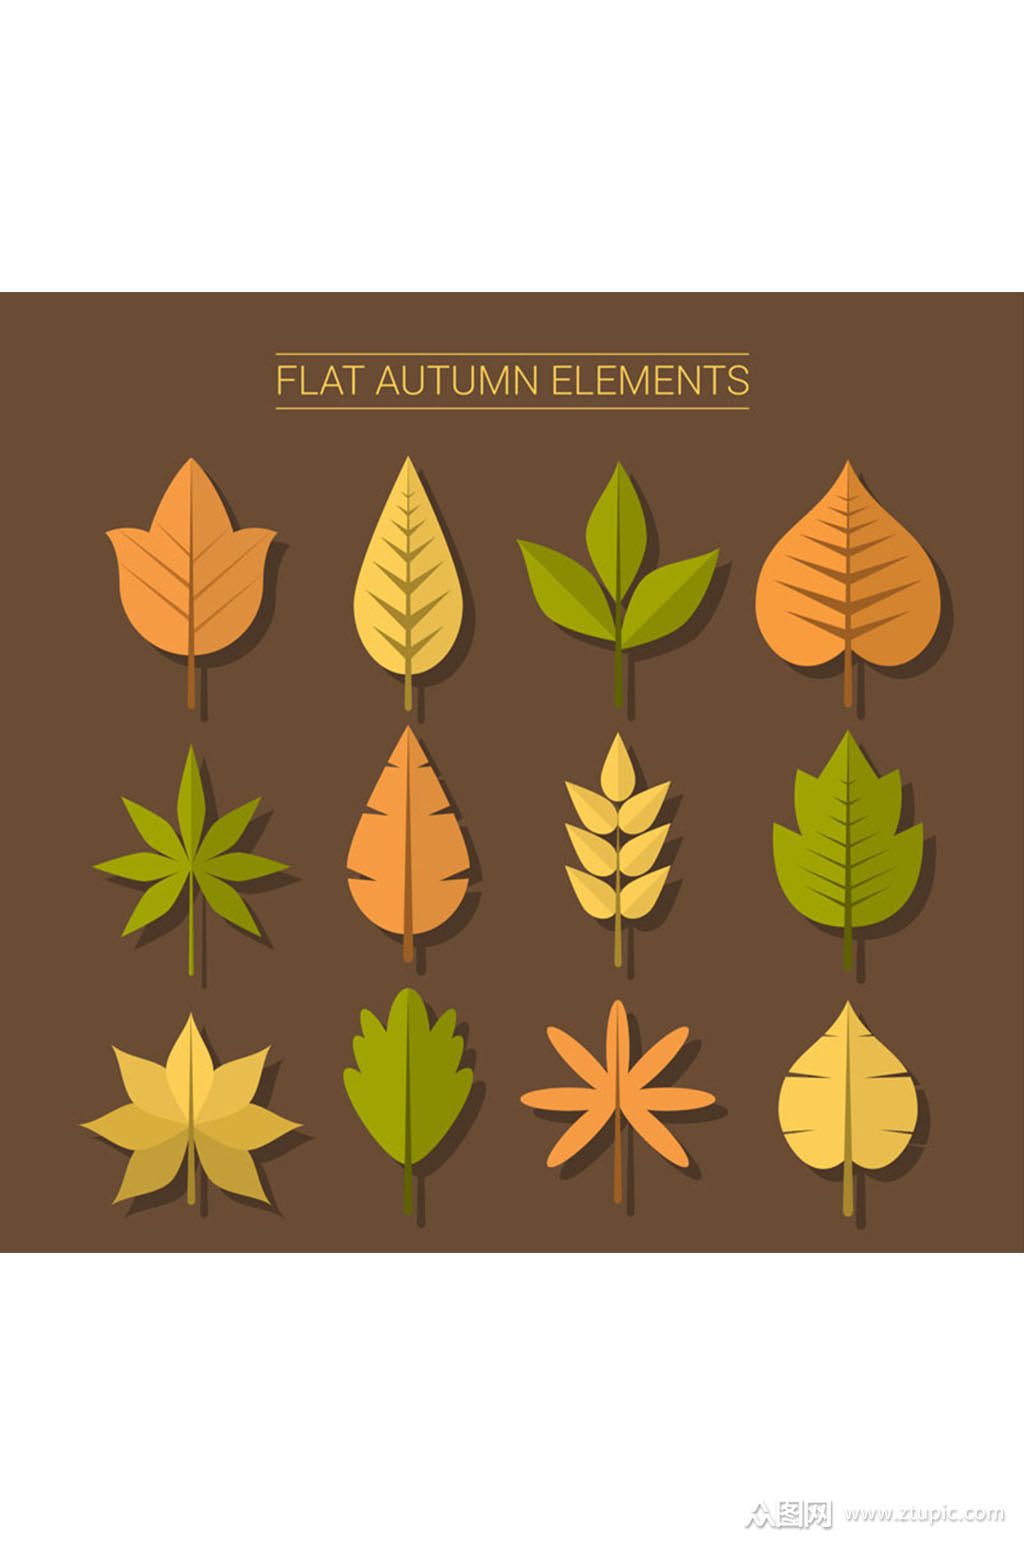 12款扁平化秋季叶子矢量素材素材